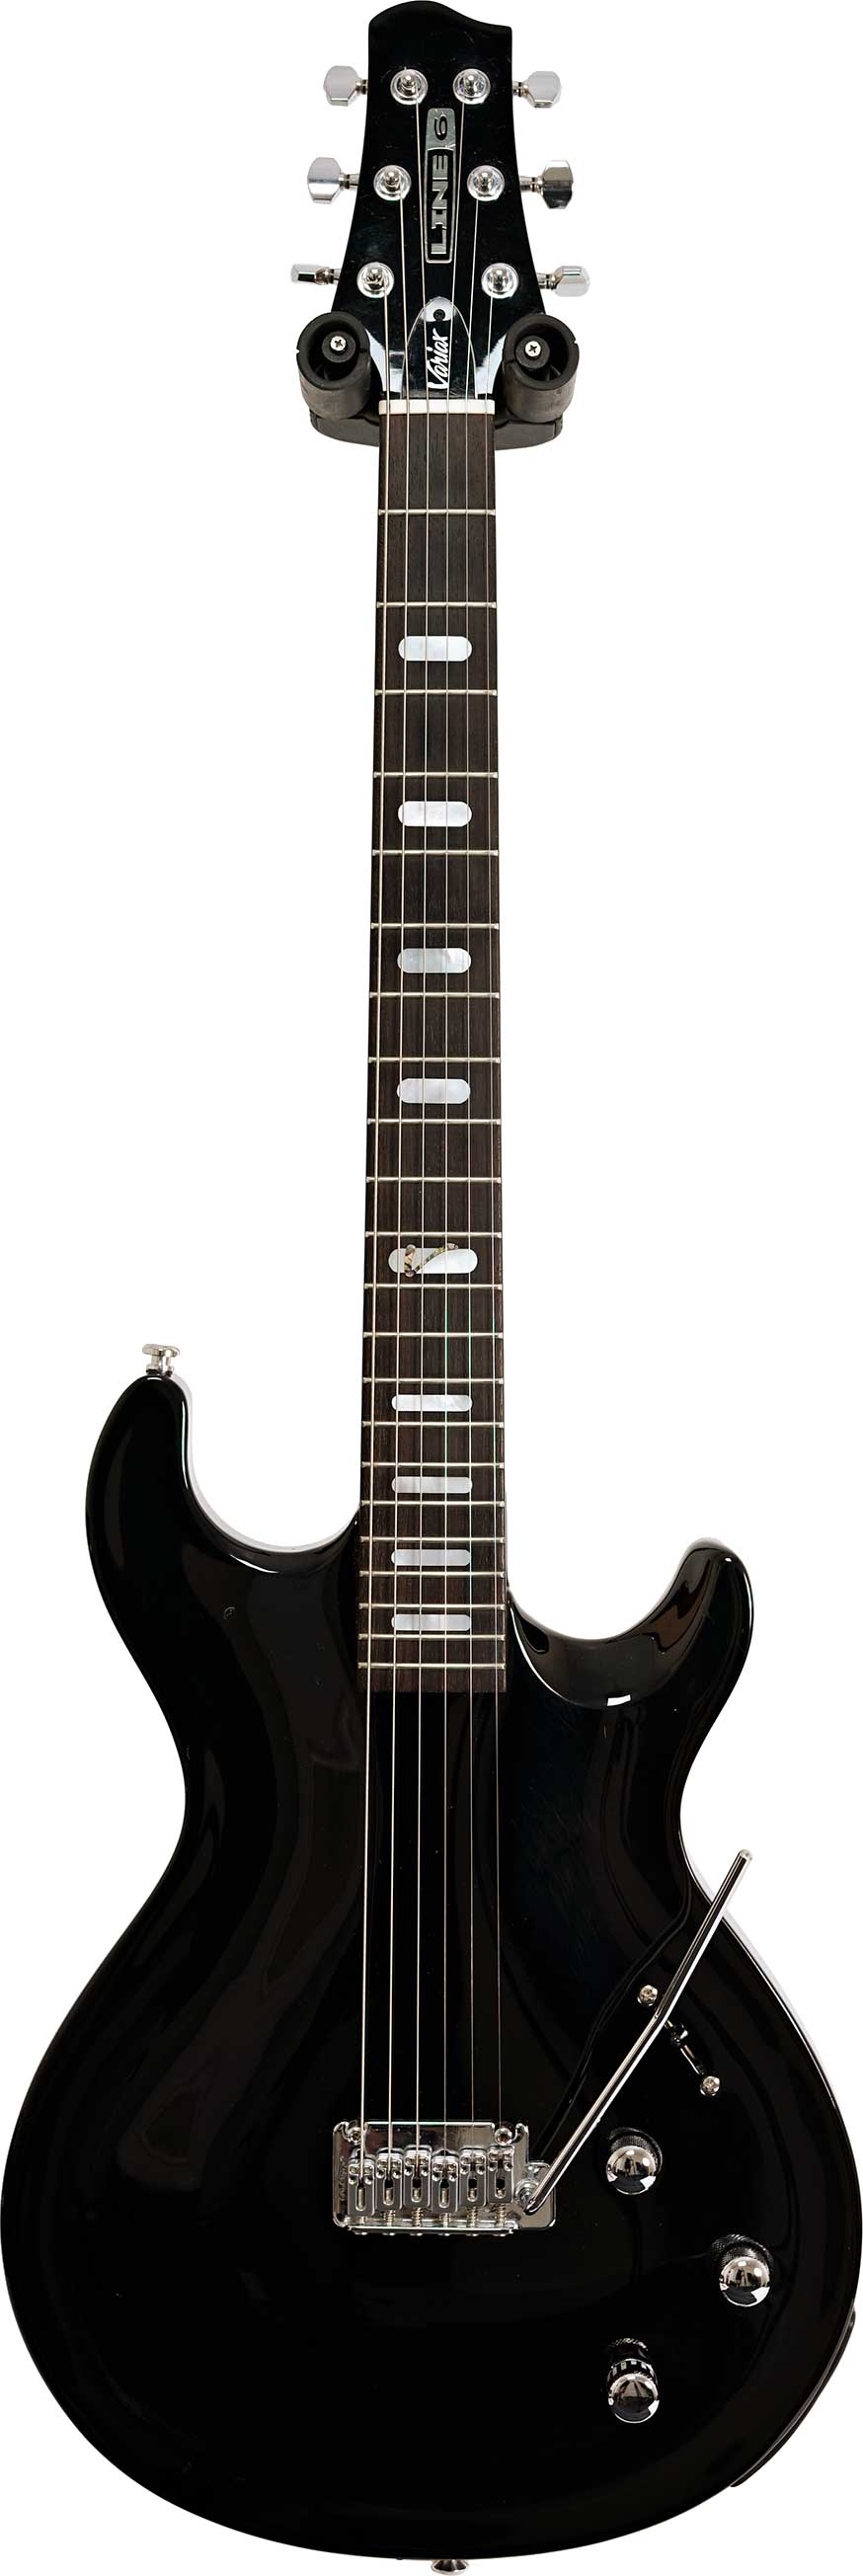 Line 6 Variax 700 Black (モデリングギター) - ギター